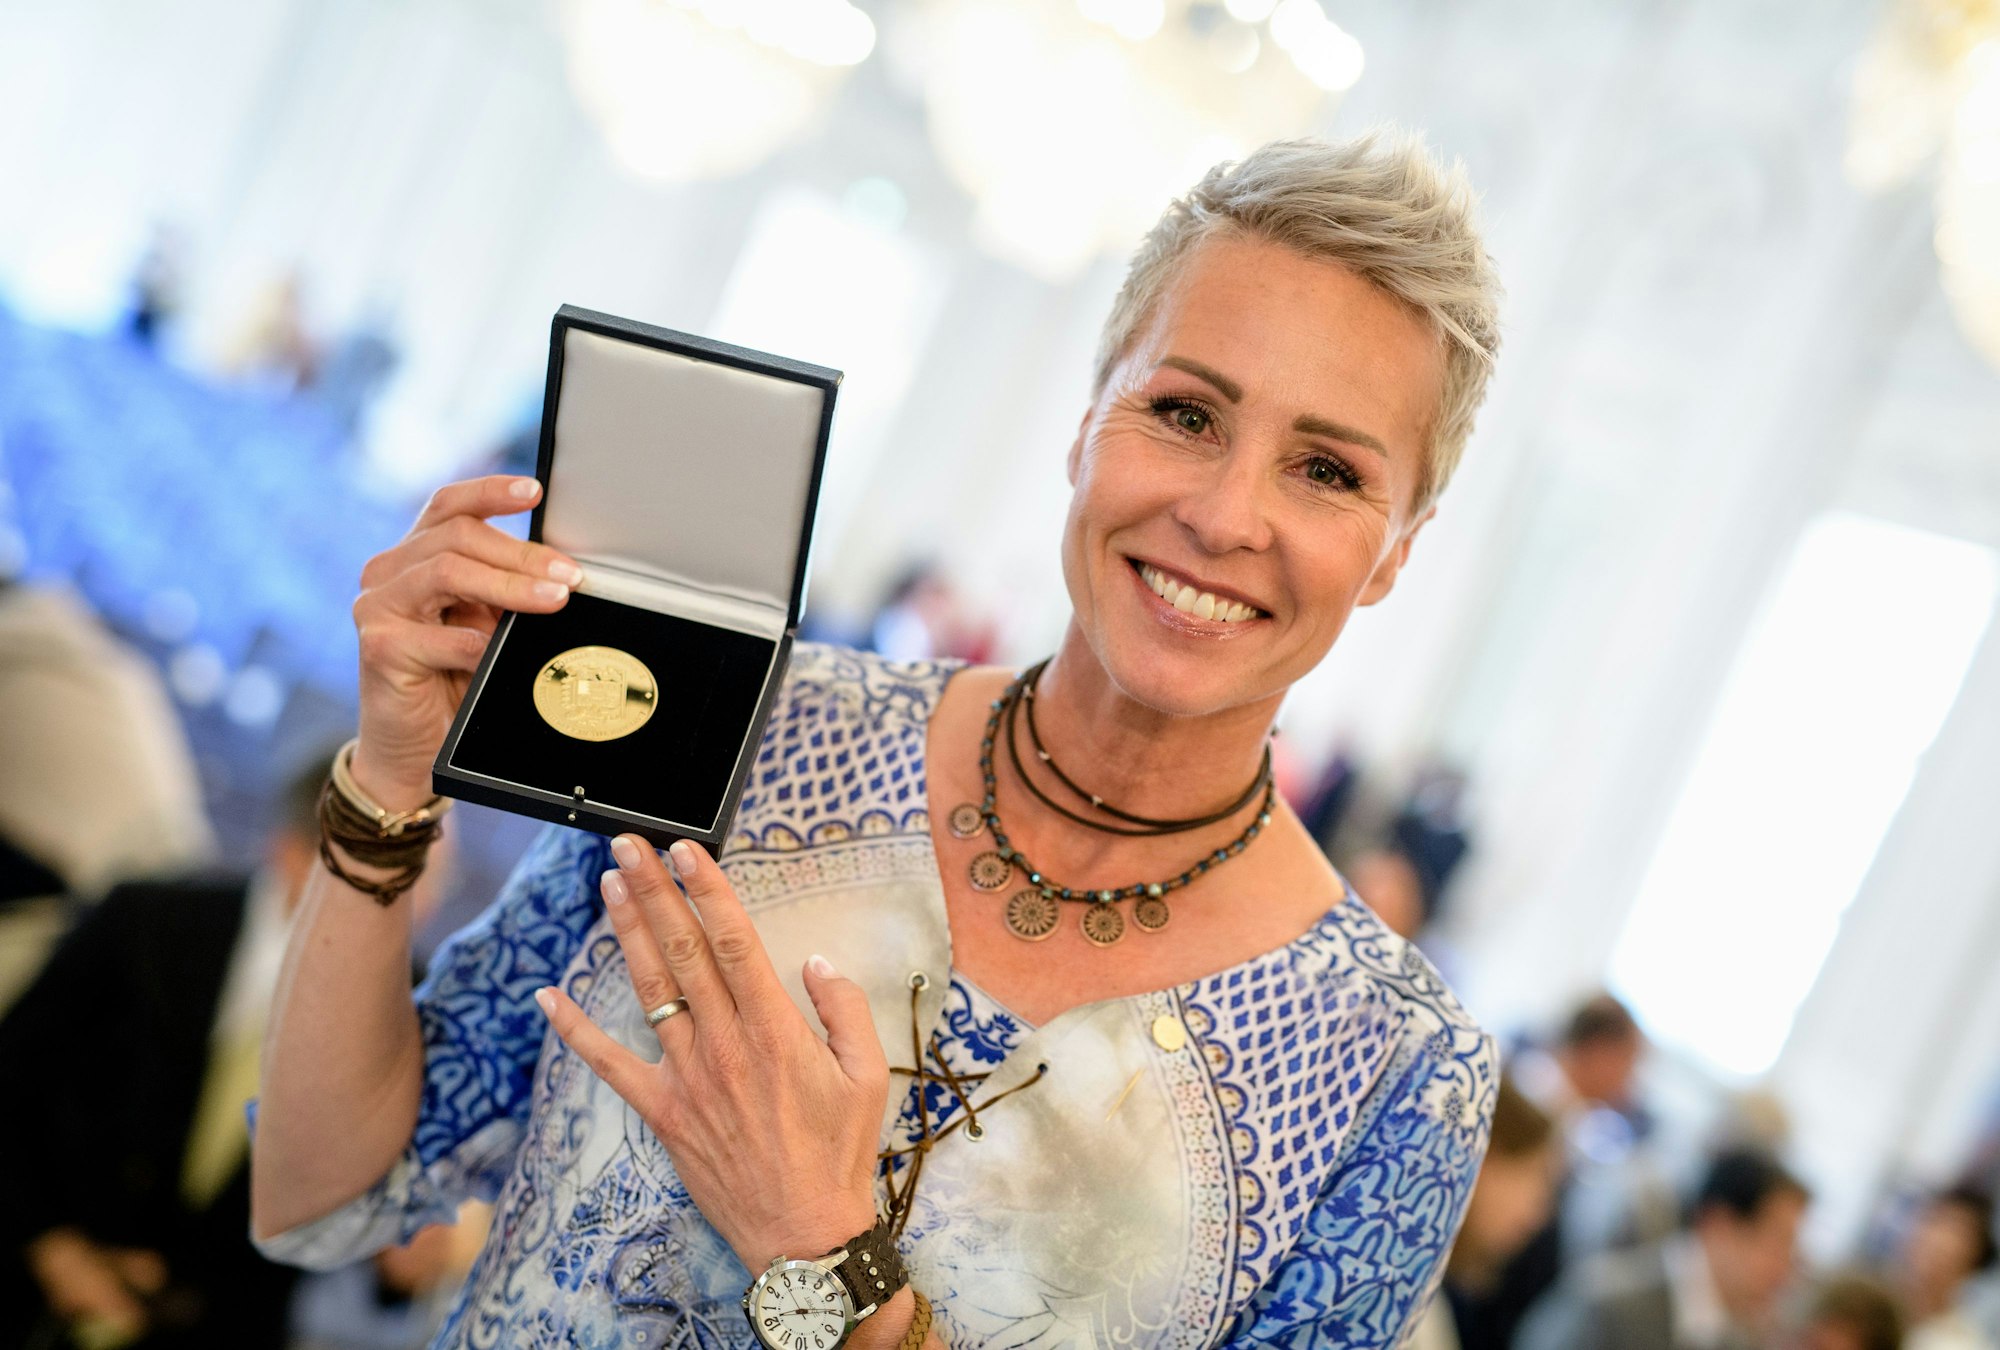 Sonja Zietlow zeigt bei der Verleihung der Bayerischen Staatsmedailllen für soziale Verdienste im Max-Joseph-Saal der Residenz ihre Auszeichnung. Zietlow wurde unter anderem für ihren jahrelangen Einsatz als Schirmherrin der Non-Profit-Organisation "Beschützerinstinkte" ausgezeichnet.